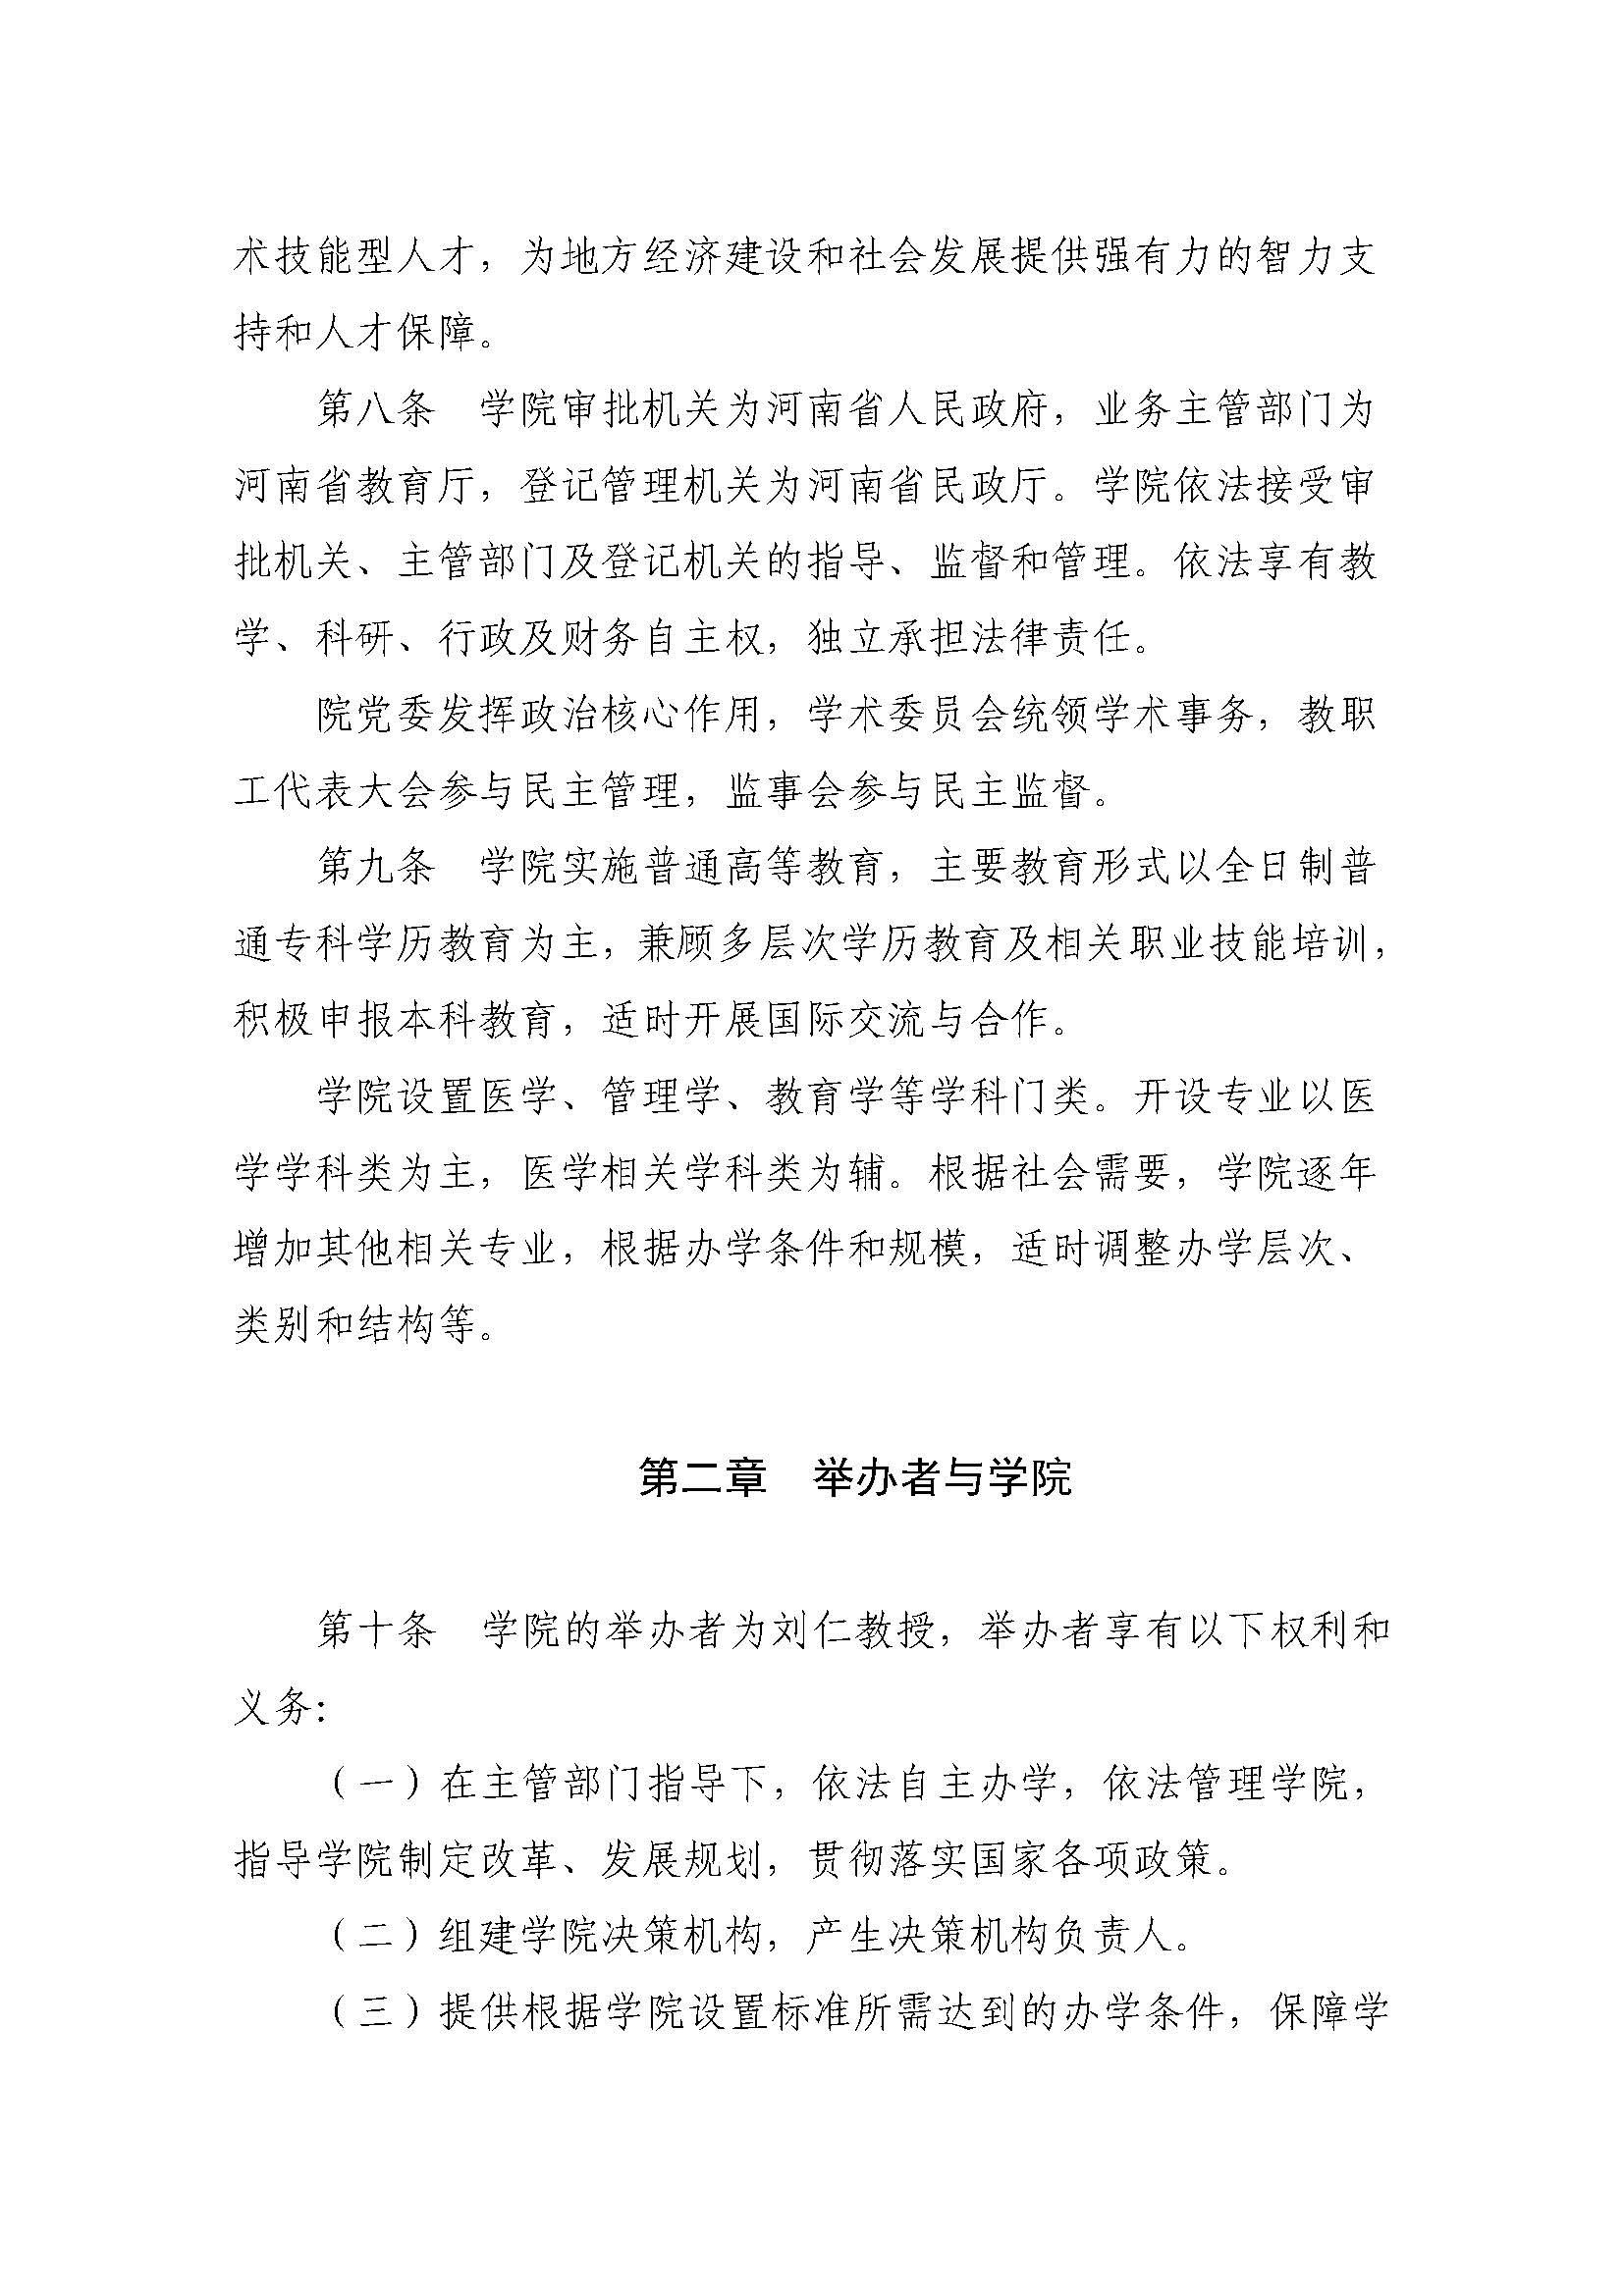 郑州黄河护理职业学院章程_页面_03.jpg